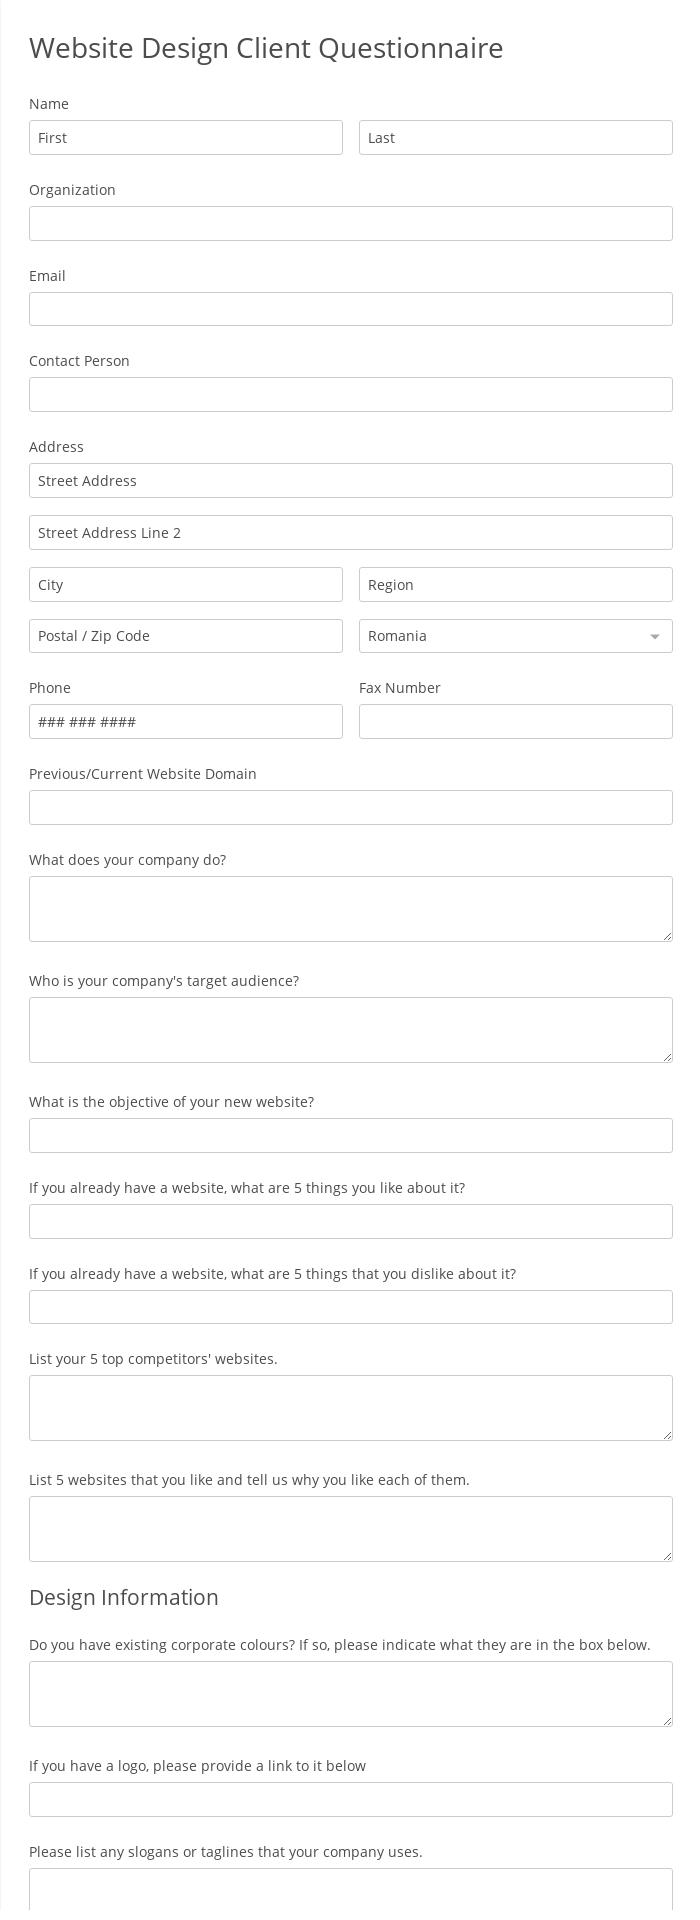 Website Design Client Questionnaire